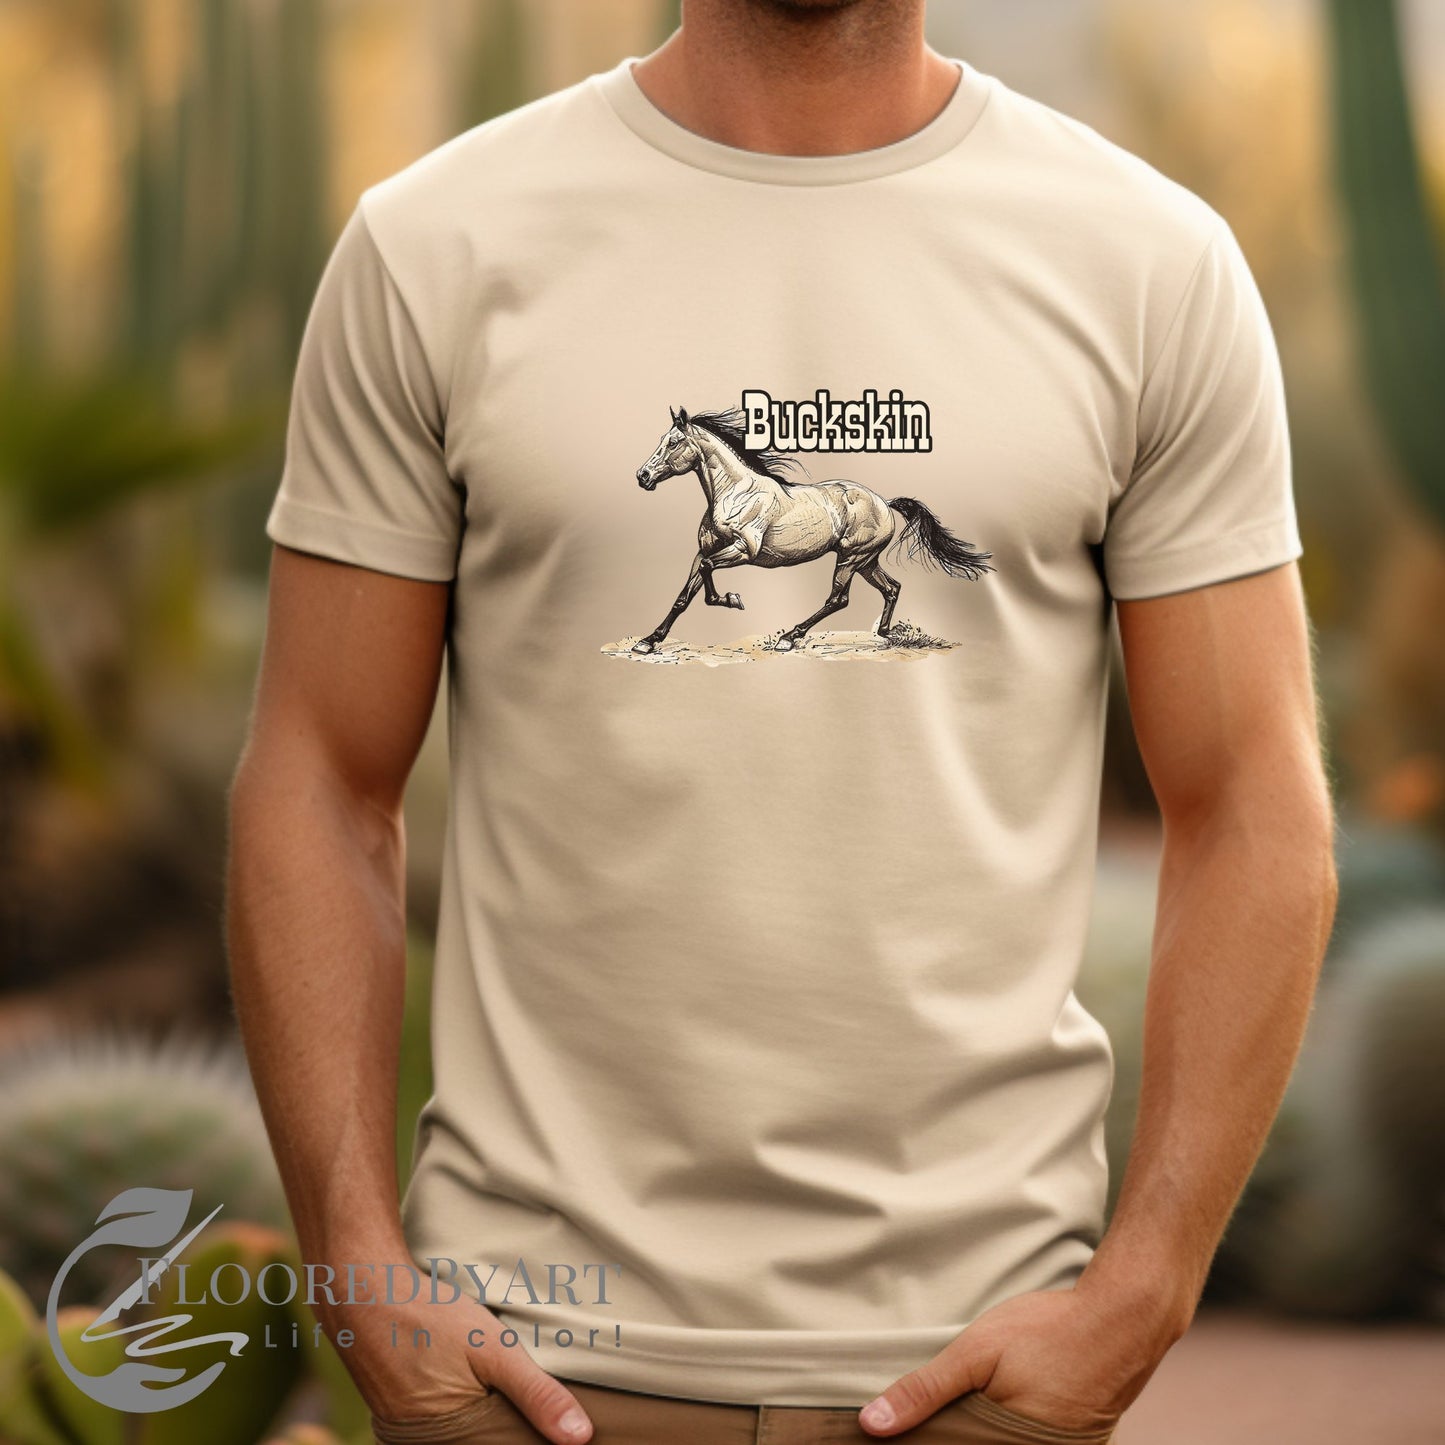 Buckskin Horse T-shirt Drawing of a Buckskin Horse on a Tee - FlooredByArt